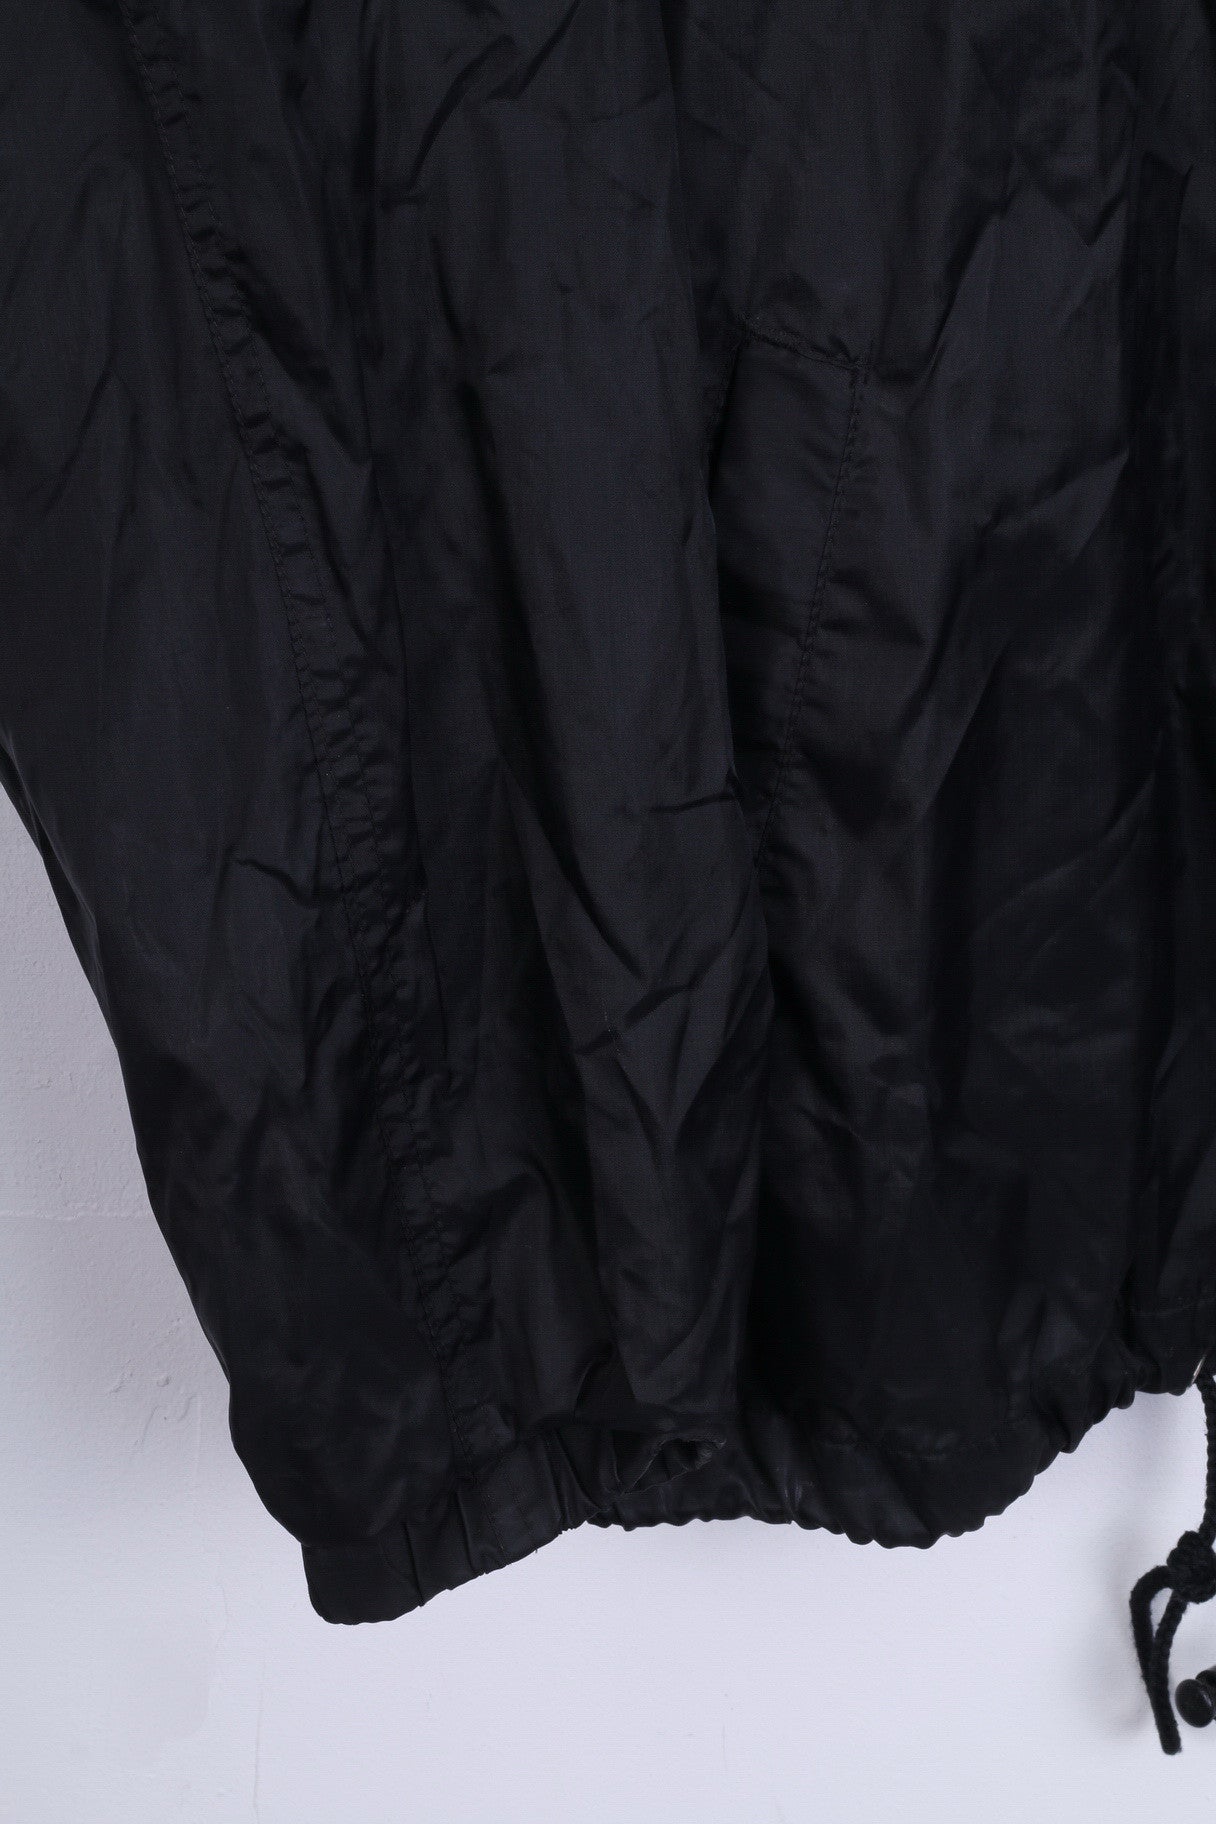 C&A Work Wear Mens L Jacket Black Nylon Waterproof Sport